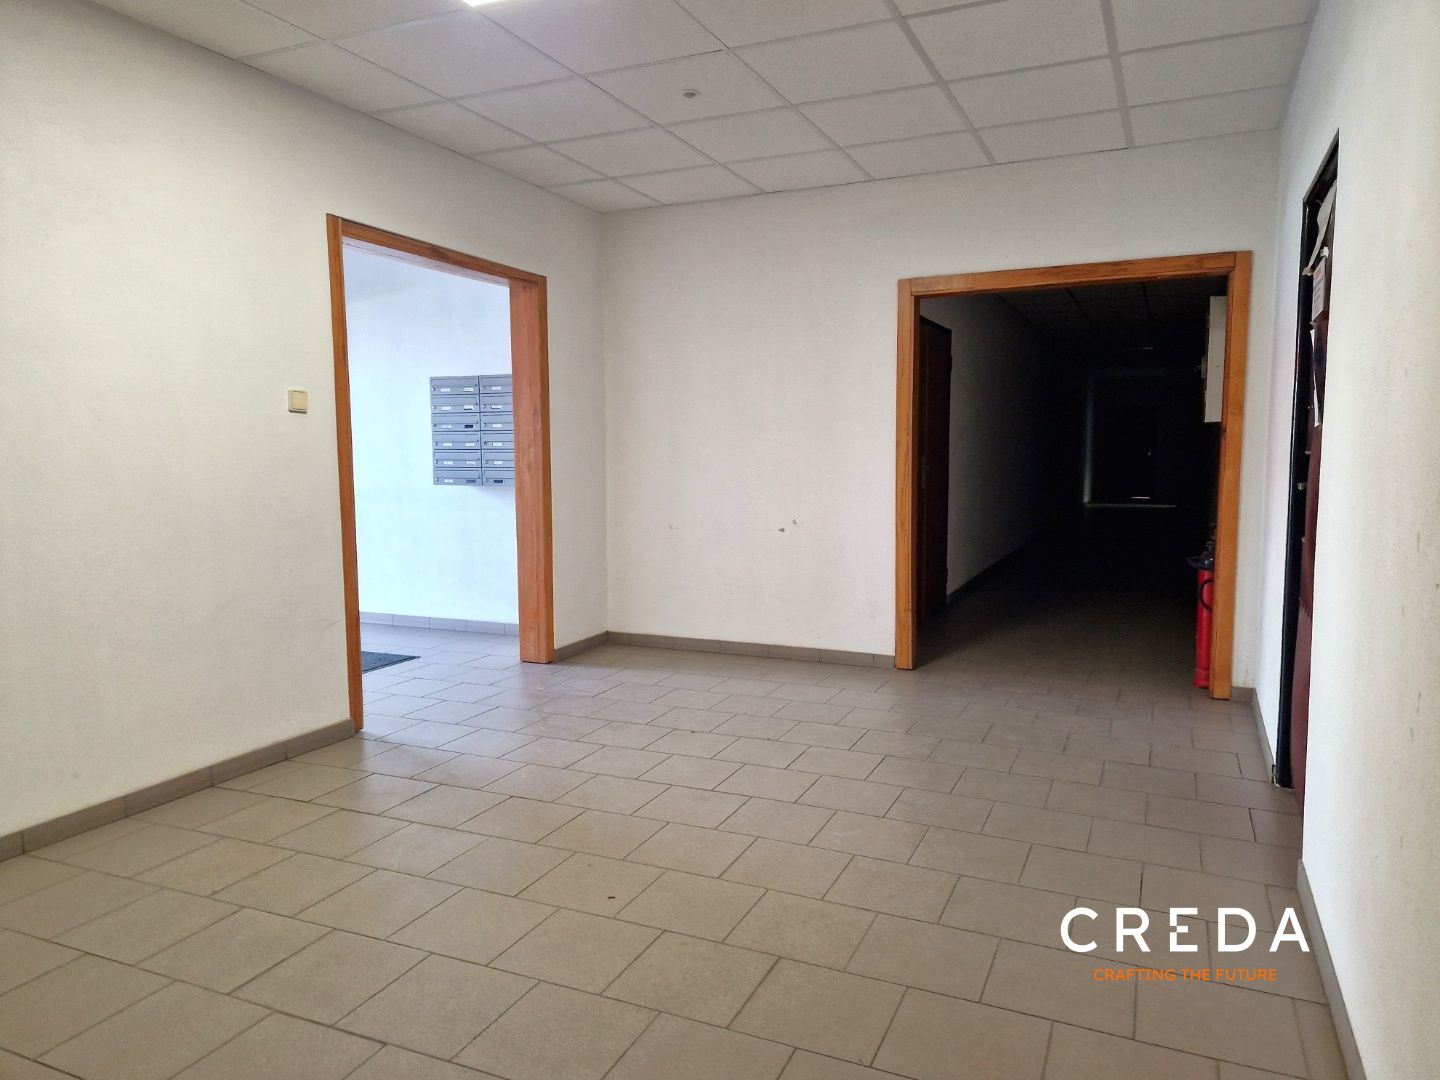 CREDA | prenájom kancelária 9,22 m2, Nitra, Cabajská 21